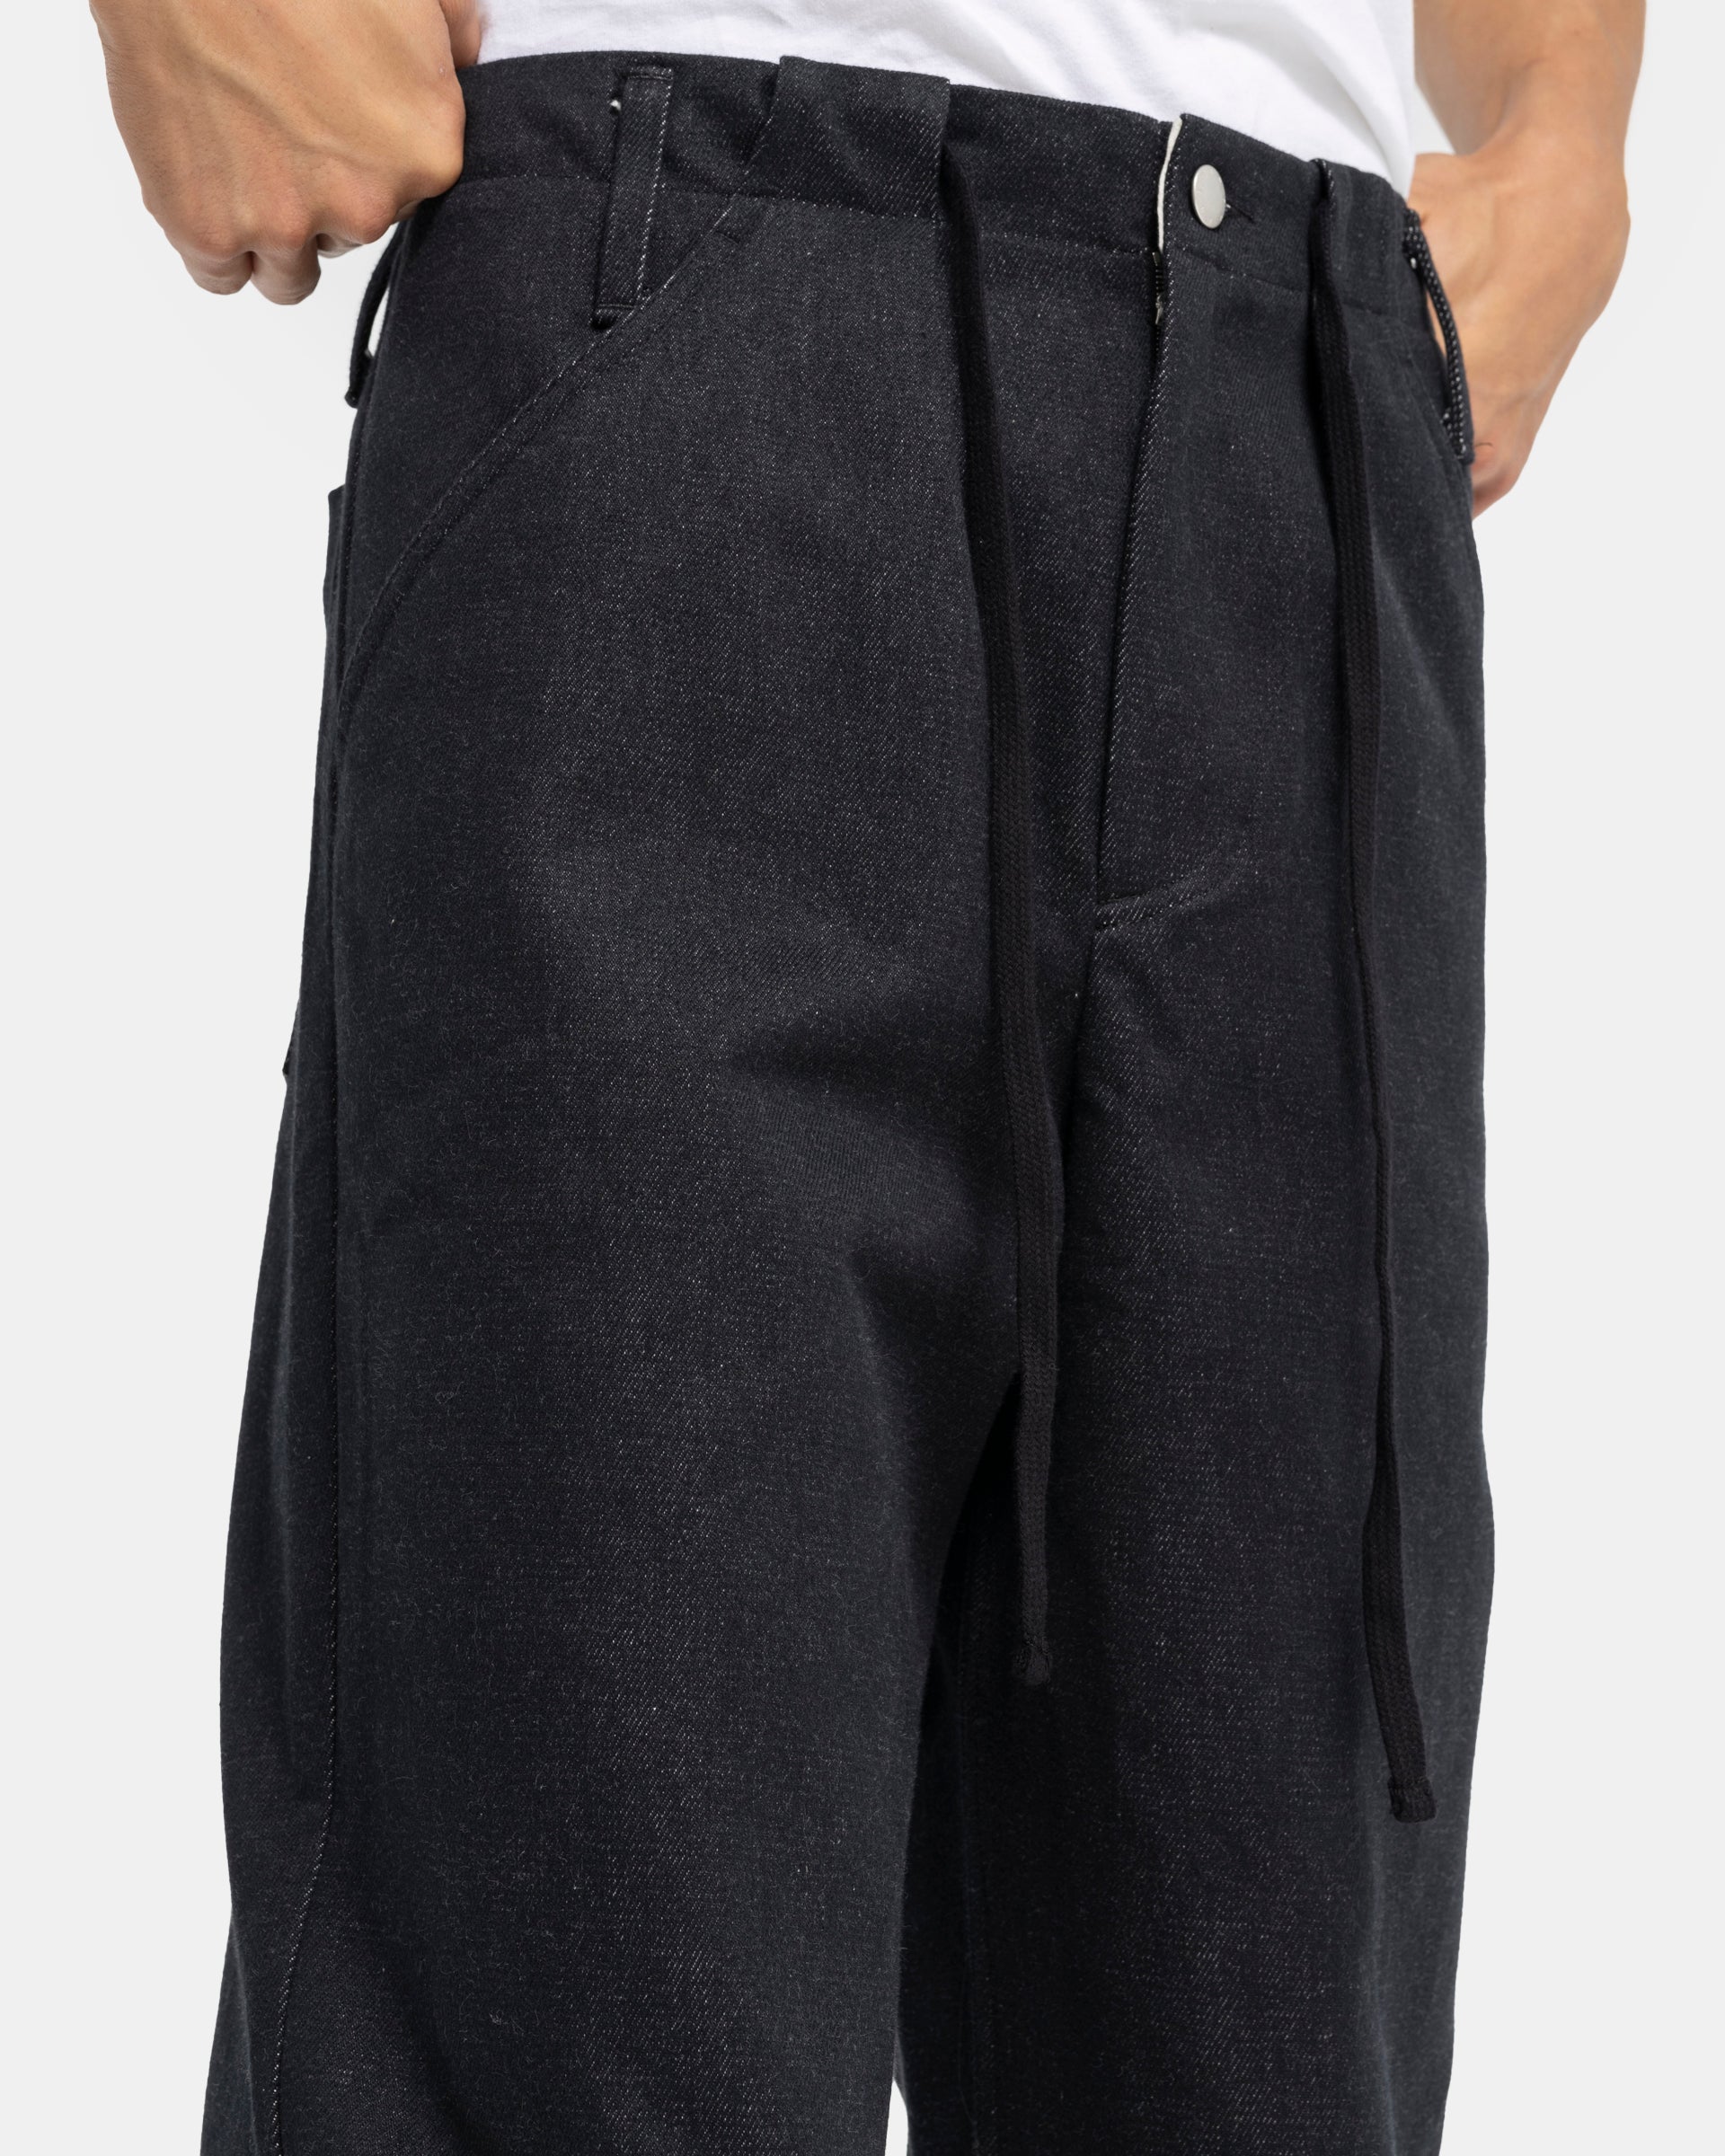 Workwear Trouser in Black